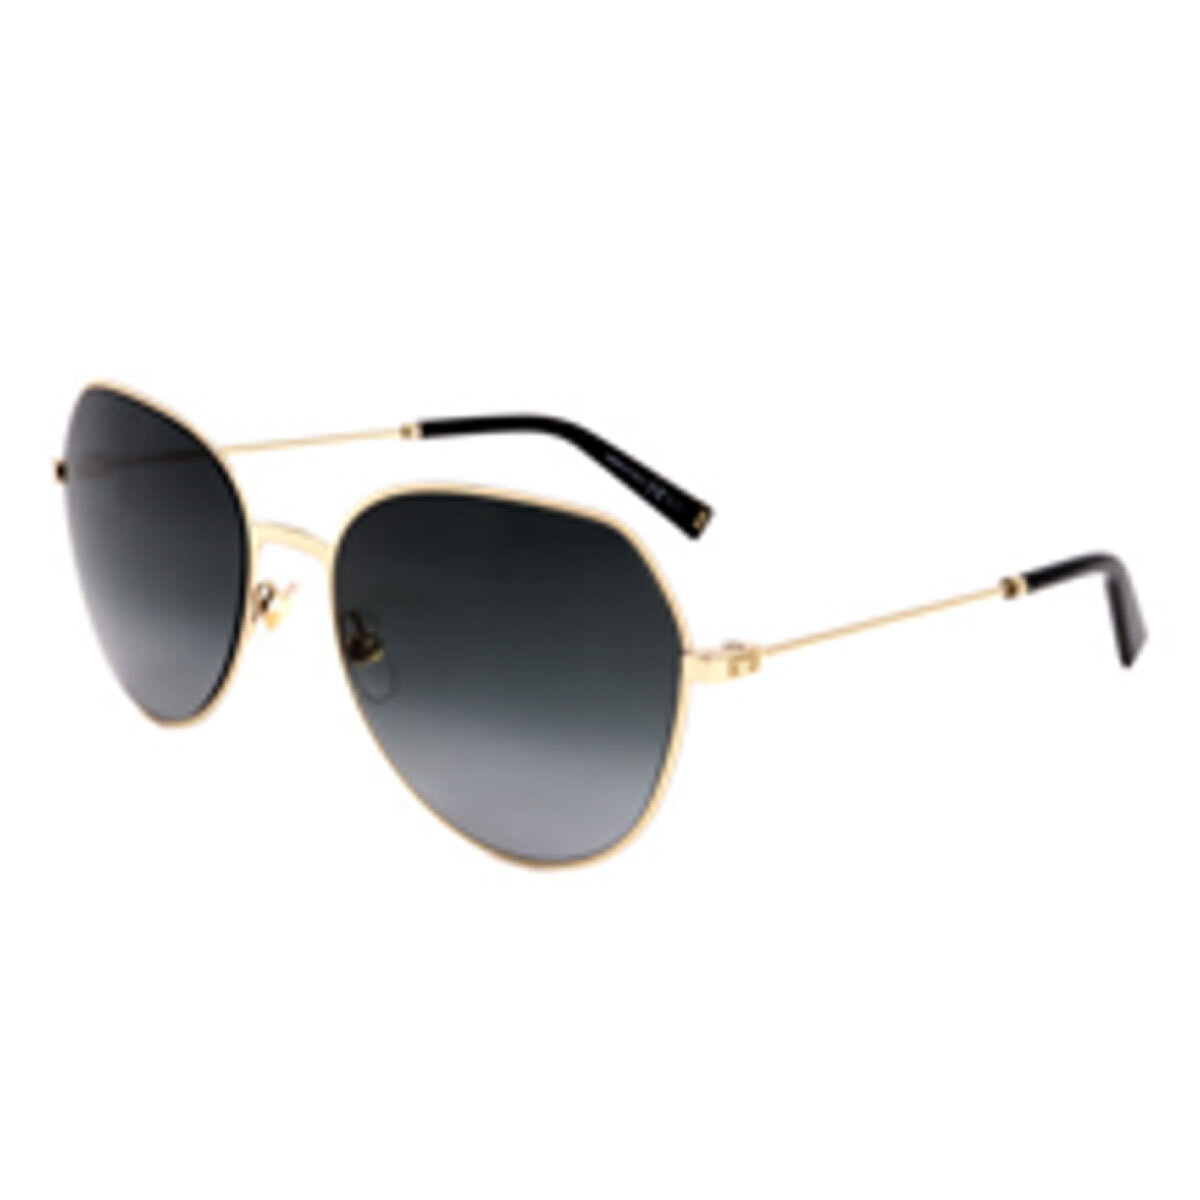 Givenchy GV 7158/S 2F790 Sunglasses